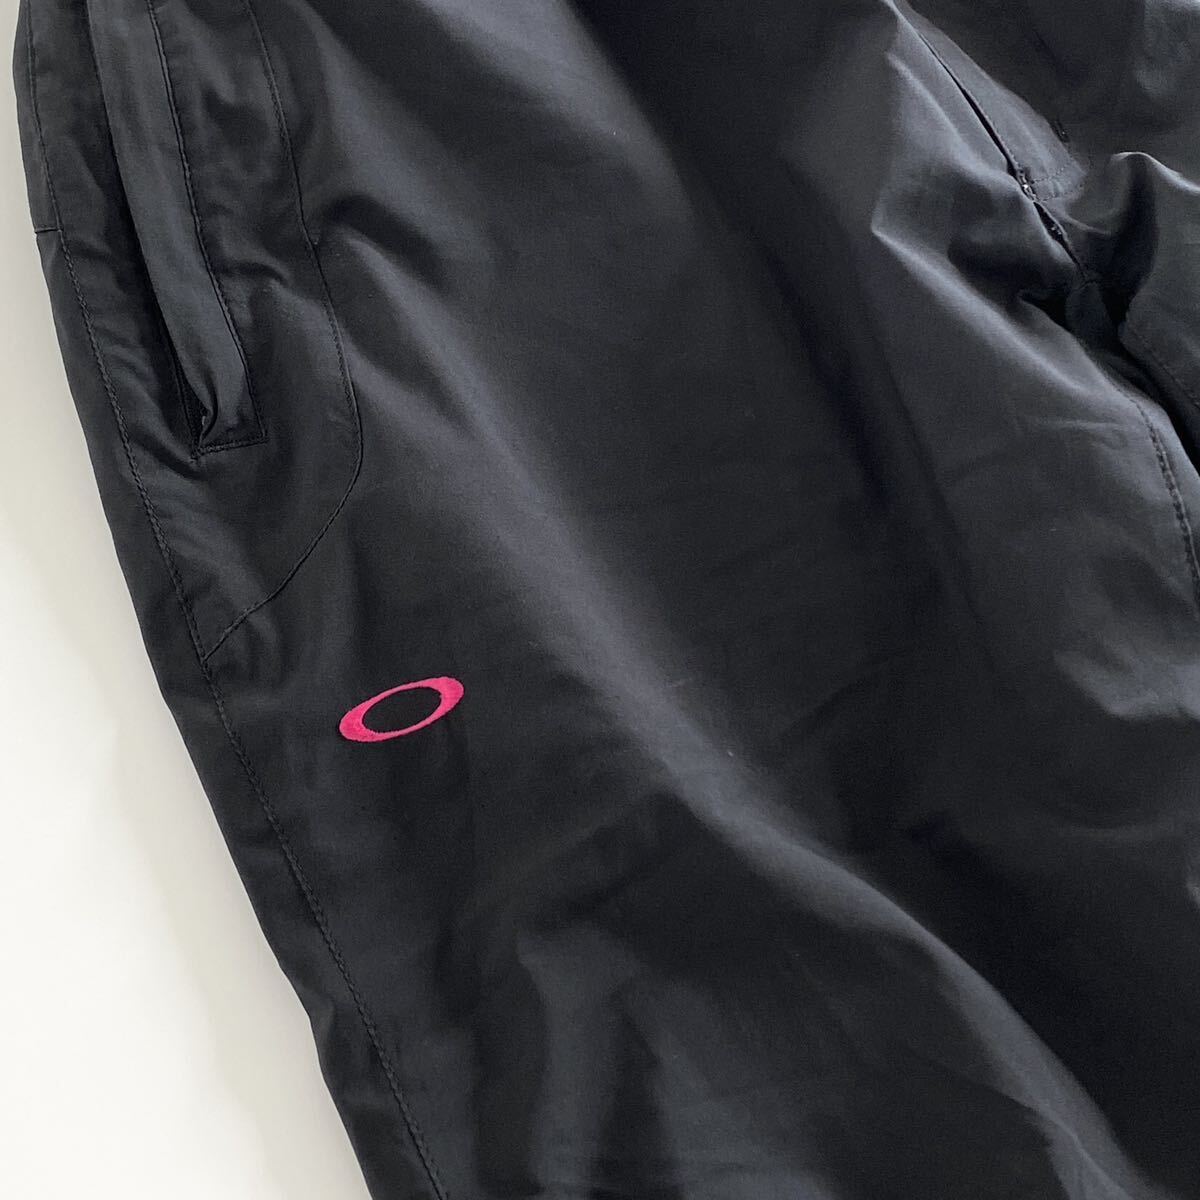 Ac29 OAKLEY オークリー ロングパンツ サイズL ブラック メンズ スポーツウェア 裾ドローコード ジップアップ ロゴ 刺繍 ボトムス_画像6